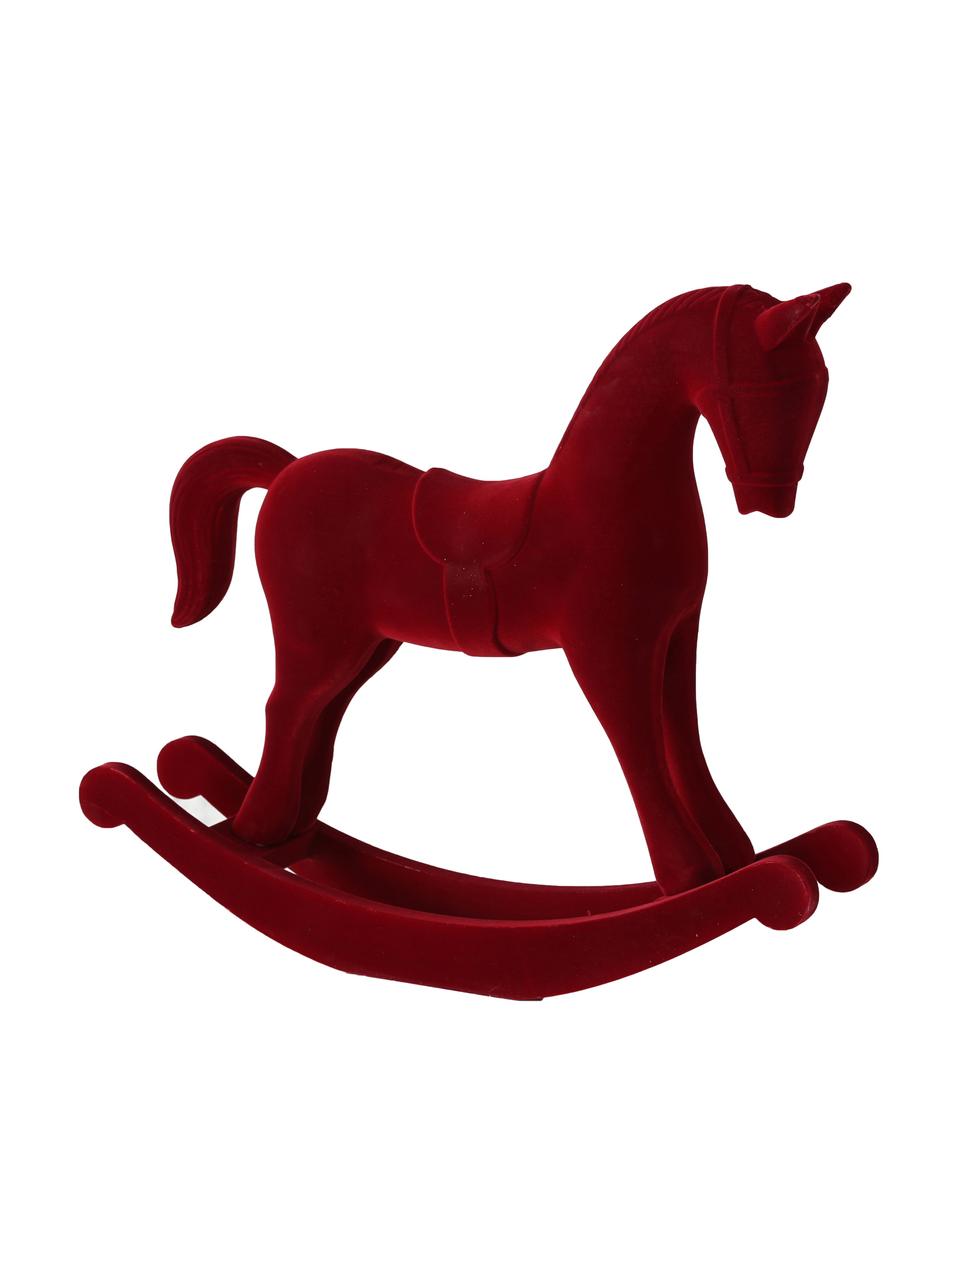 Samt-Deko-Objekt Rocking Horse, Bezug: Samt, Gestell: Mitteldichte Holzfaserpla, Rot, 38 x 31 cm